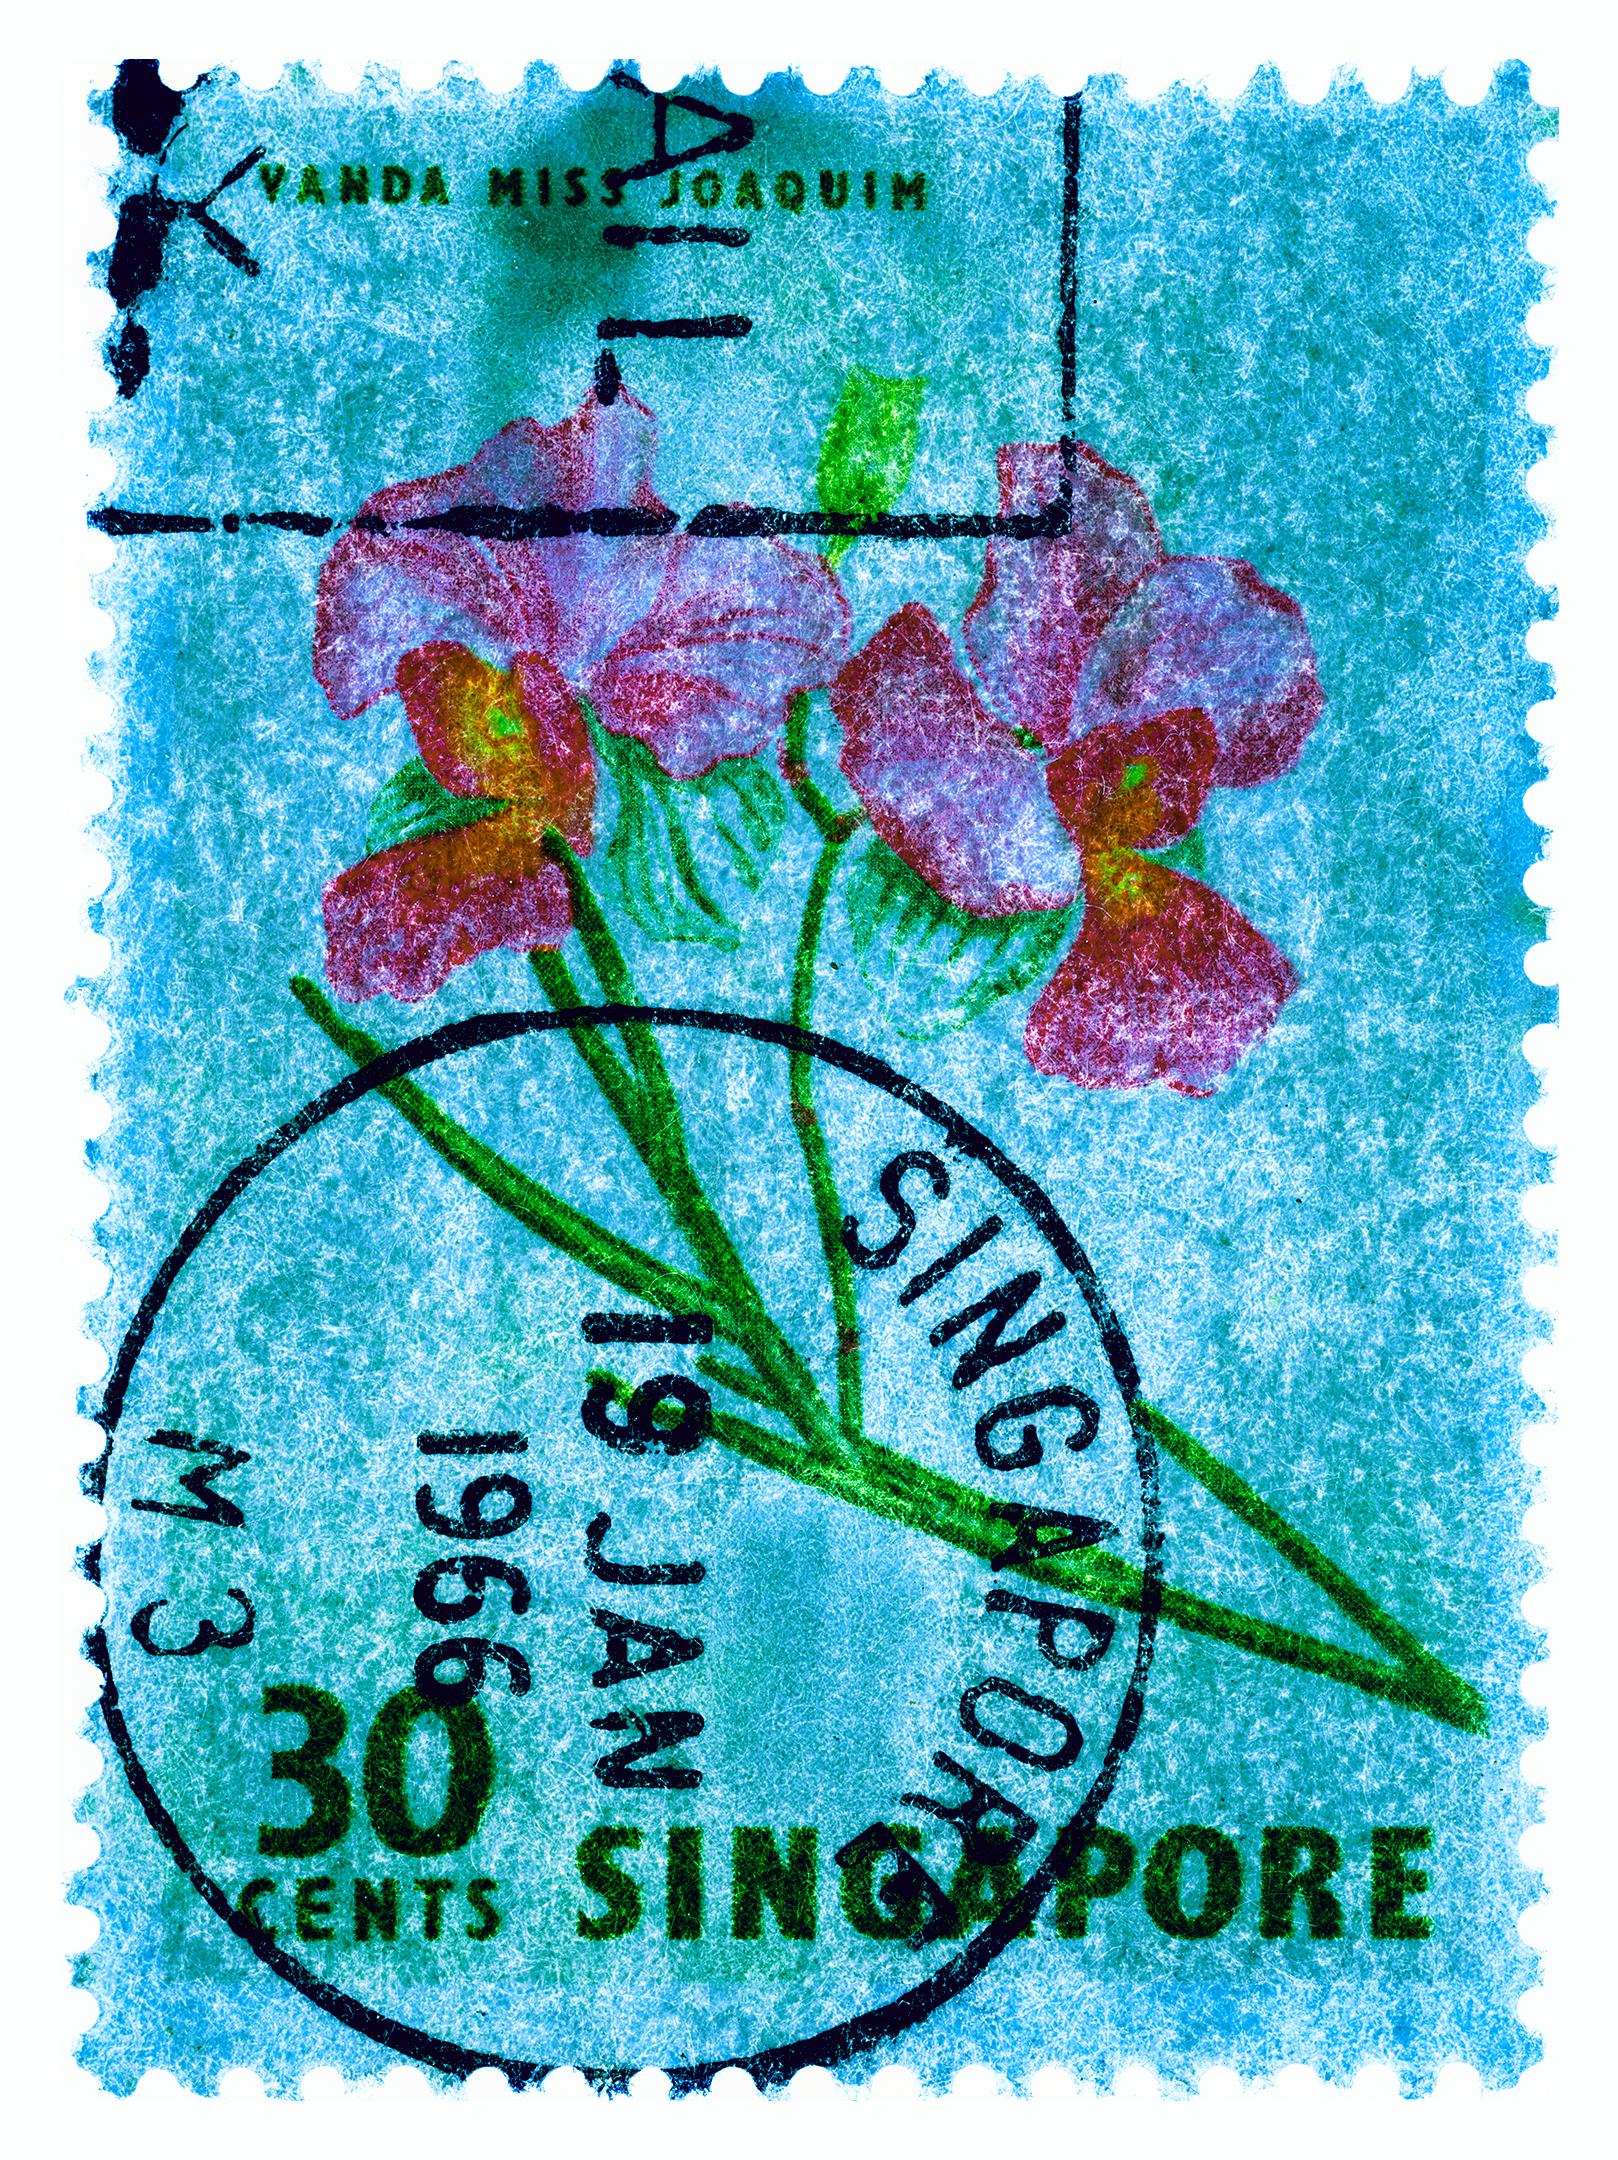 Collection de timbres de Singapour, 30c Singapore Orchid Blue - Photo de couleur florale